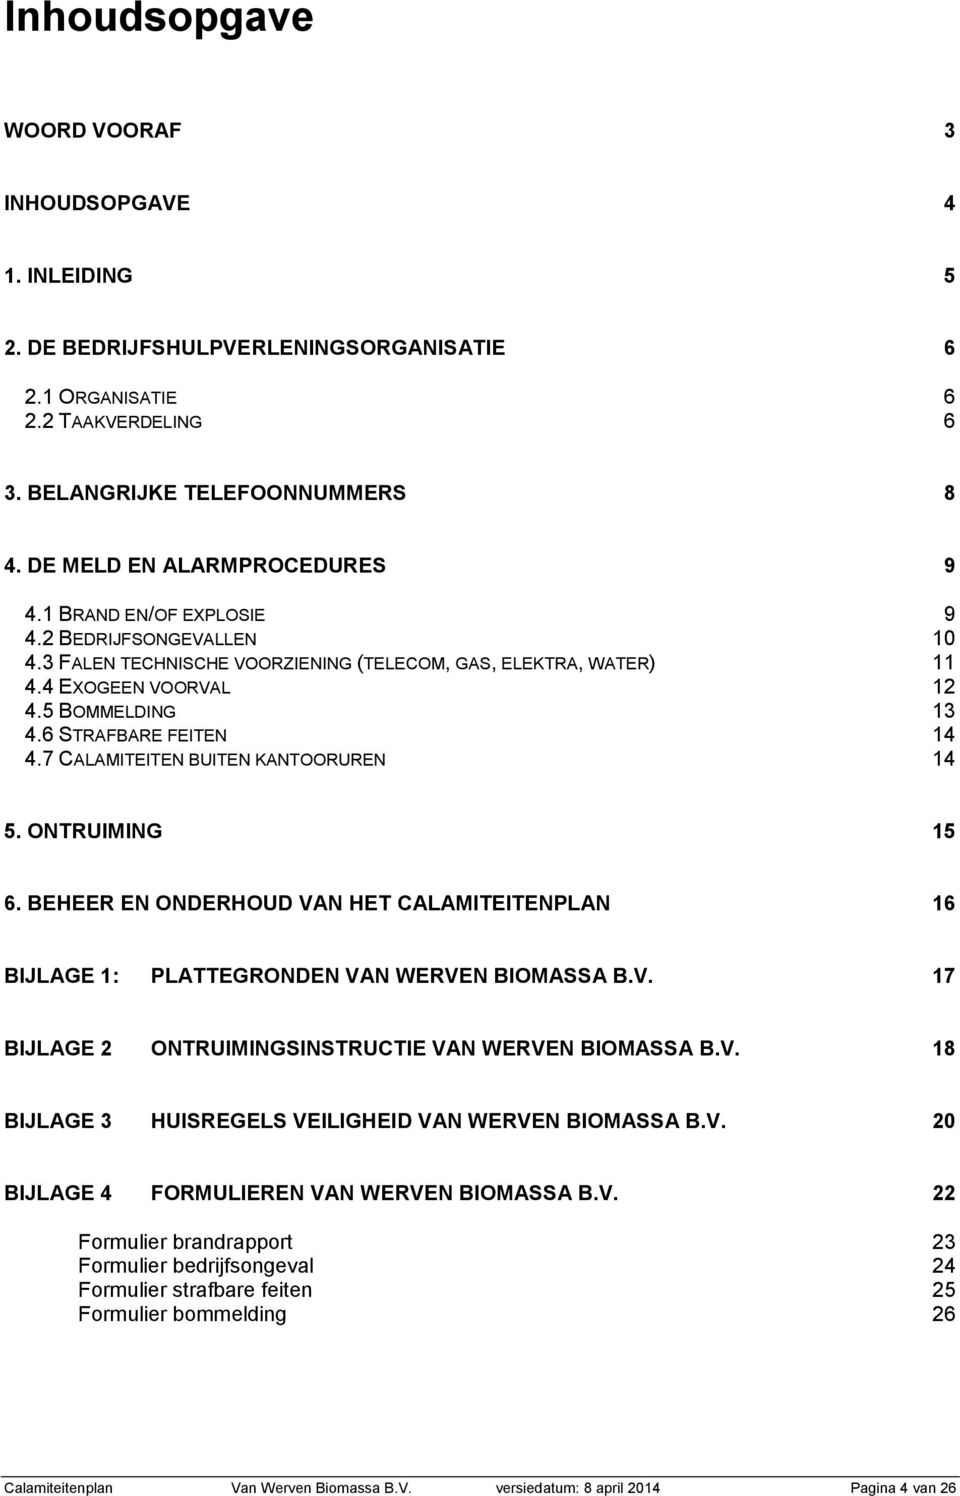 6 STRAFBARE FEITEN 14 4.7 CALAMITEITEN BUITEN KANTOORUREN 14 5. ONTRUIMING 15 6. BEHEER EN ONDERHOUD VAN HET CALAMITEITENPLAN 16 BIJLAGE 1: PLATTEGRONDEN VAN WERVEN BIOMASSA B.V. 17 BIJLAGE 2 ONTRUIMINGSINSTRUCTIE VAN WERVEN BIOMASSA B.